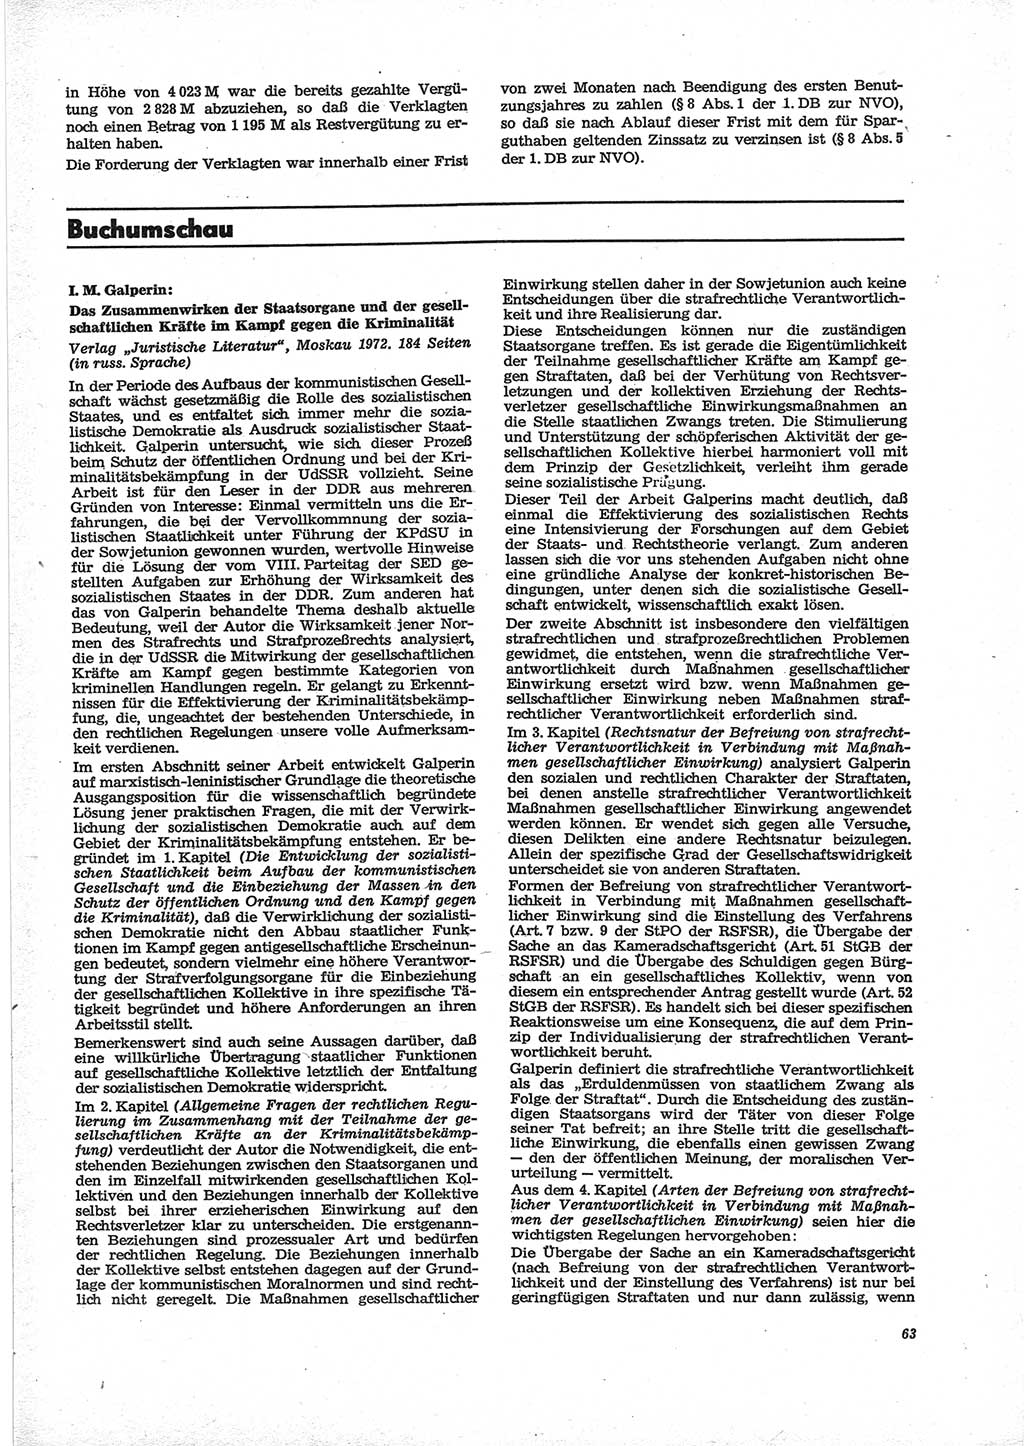 Neue Justiz (NJ), Zeitschrift für Recht und Rechtswissenschaft [Deutsche Demokratische Republik (DDR)], 28. Jahrgang 1974, Seite 63 (NJ DDR 1974, S. 63)